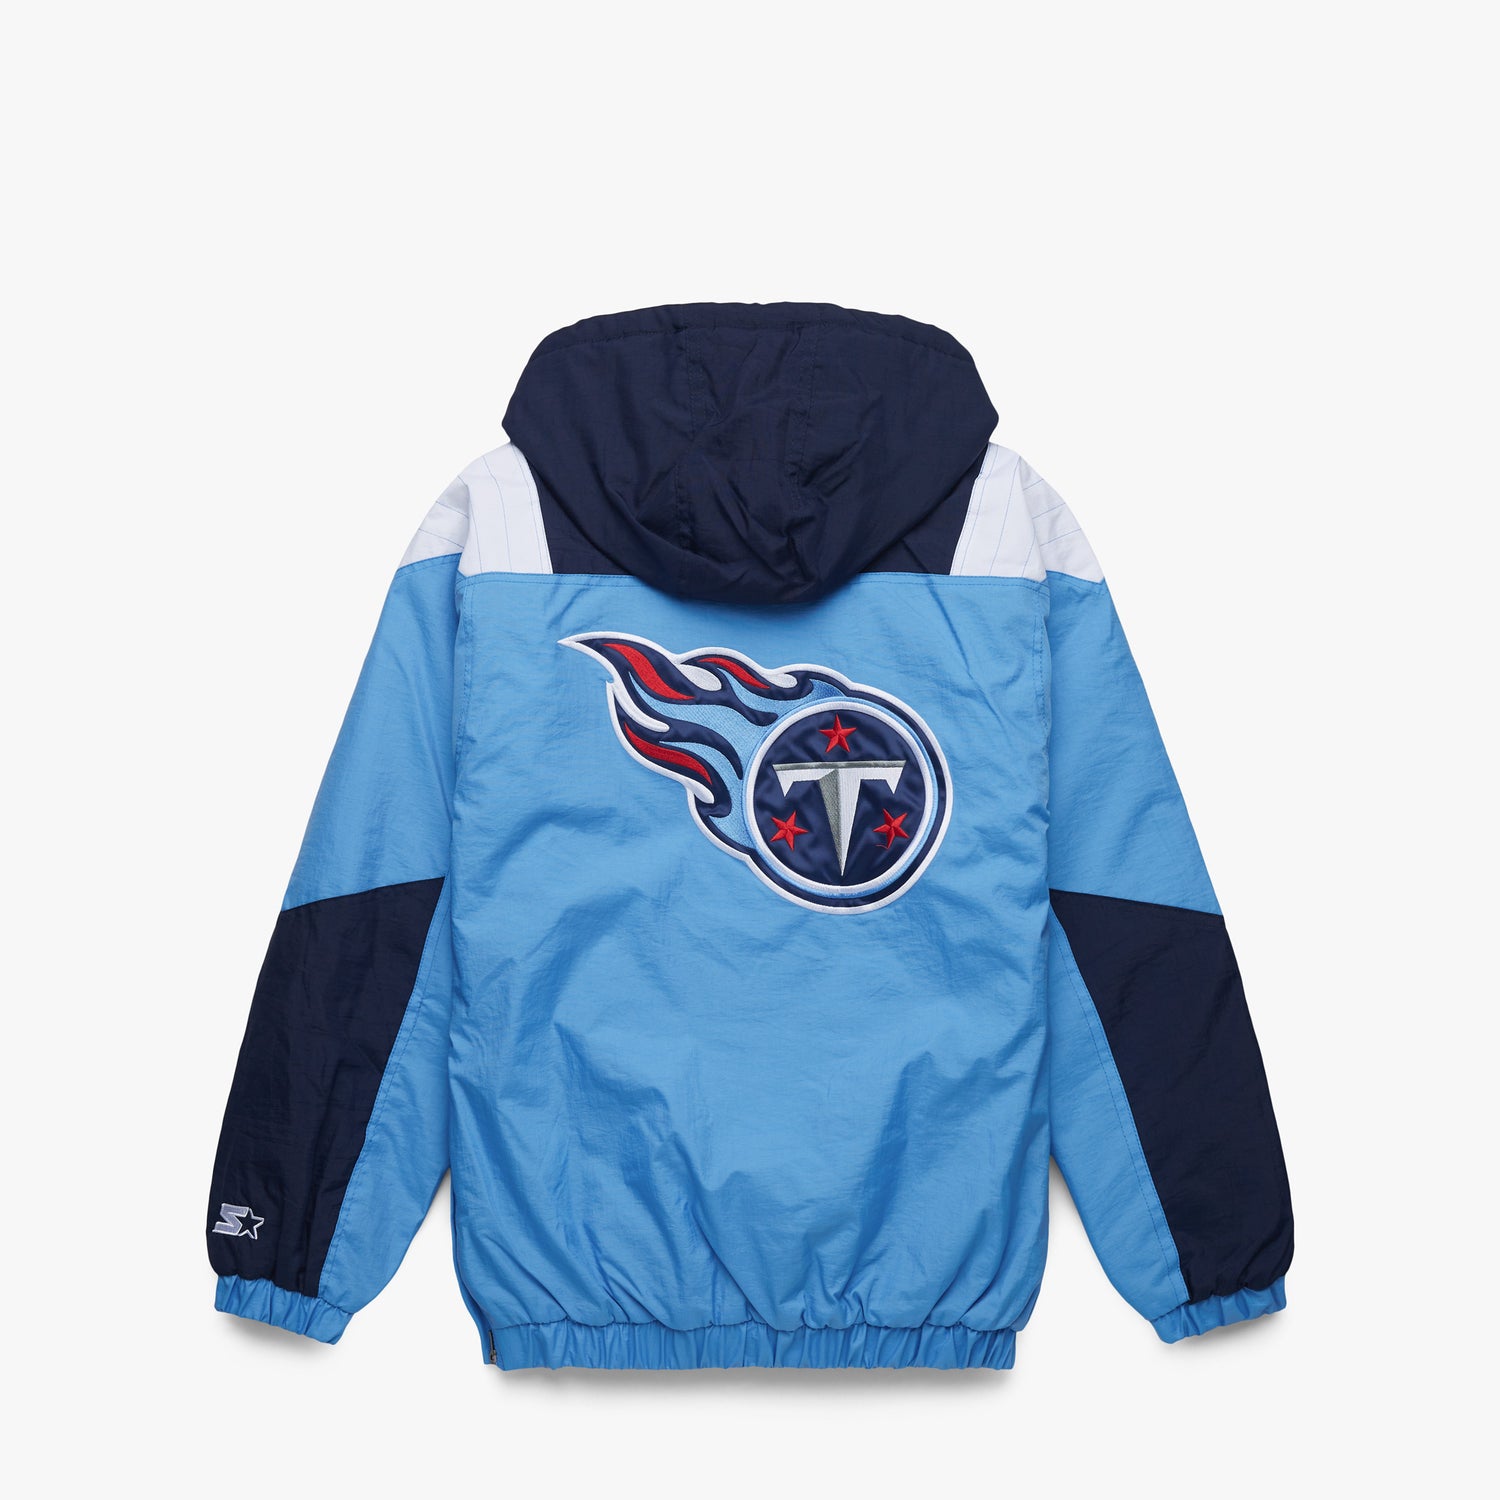 Homage Tennessee Titans Oilers Man shirt, hoodie, longsleeve, sweater